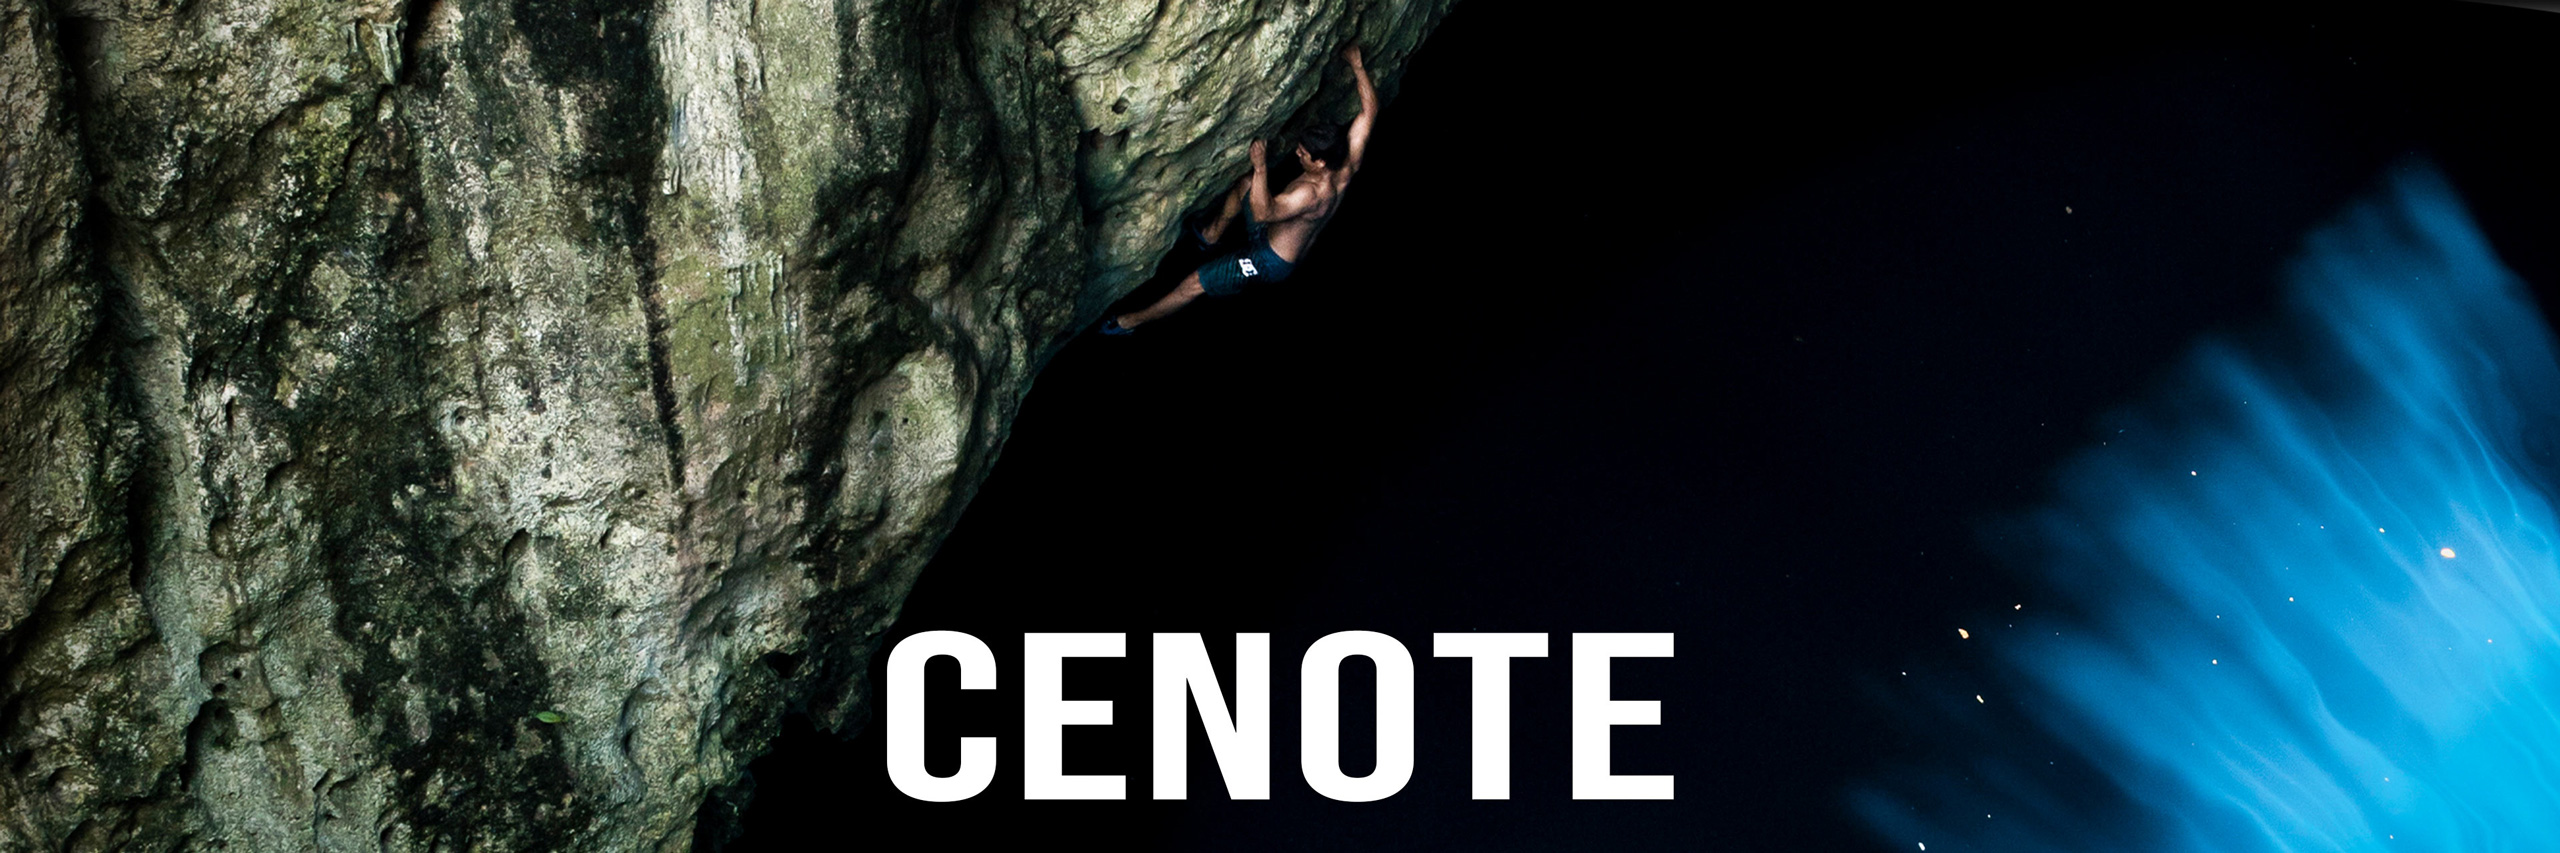 Reel Rock 16: Cenote